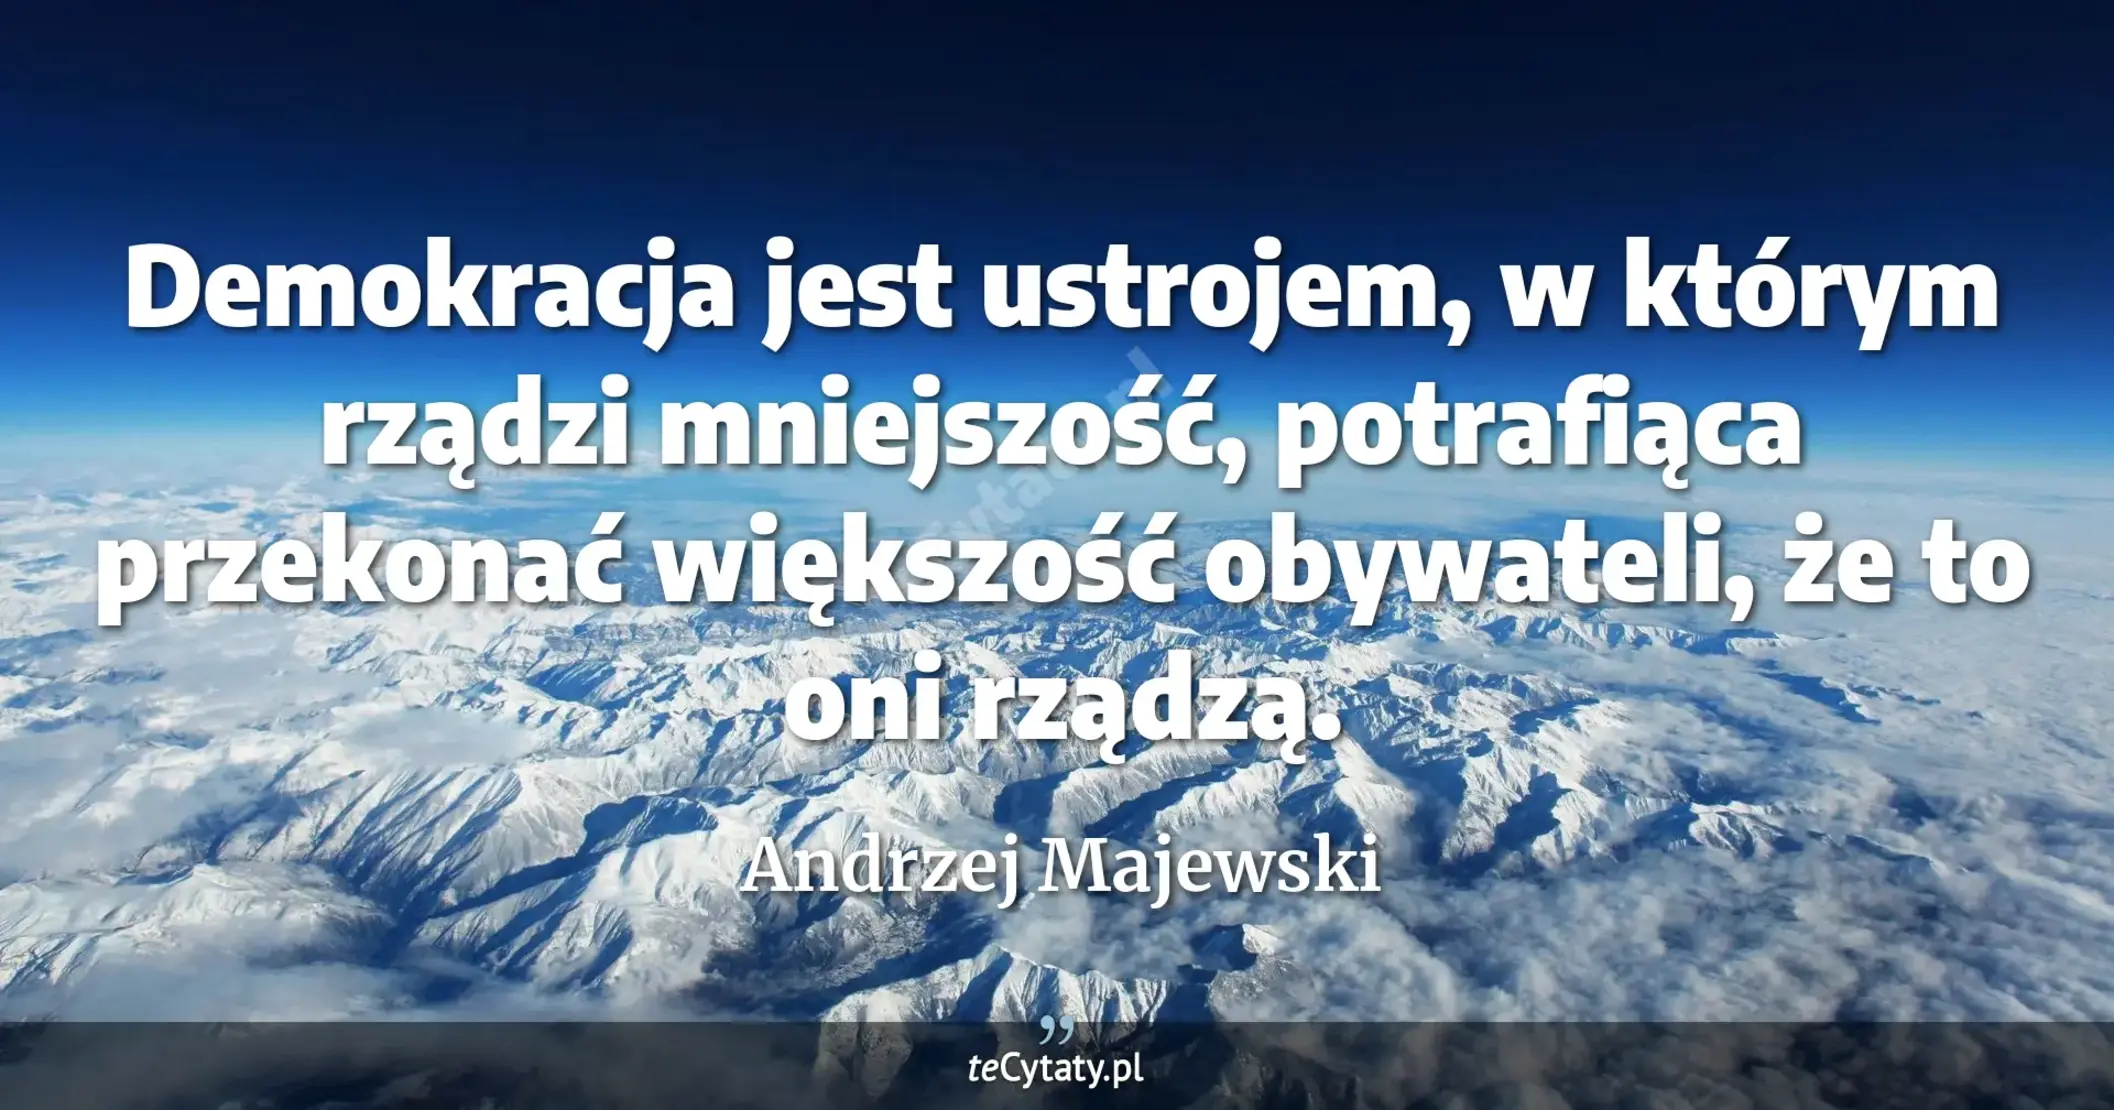 Demokracja jest ustrojem, w którym rządzi mniejszość, potrafiąca przekonać większość obywateli, że to oni rządzą. - Andrzej Majewski